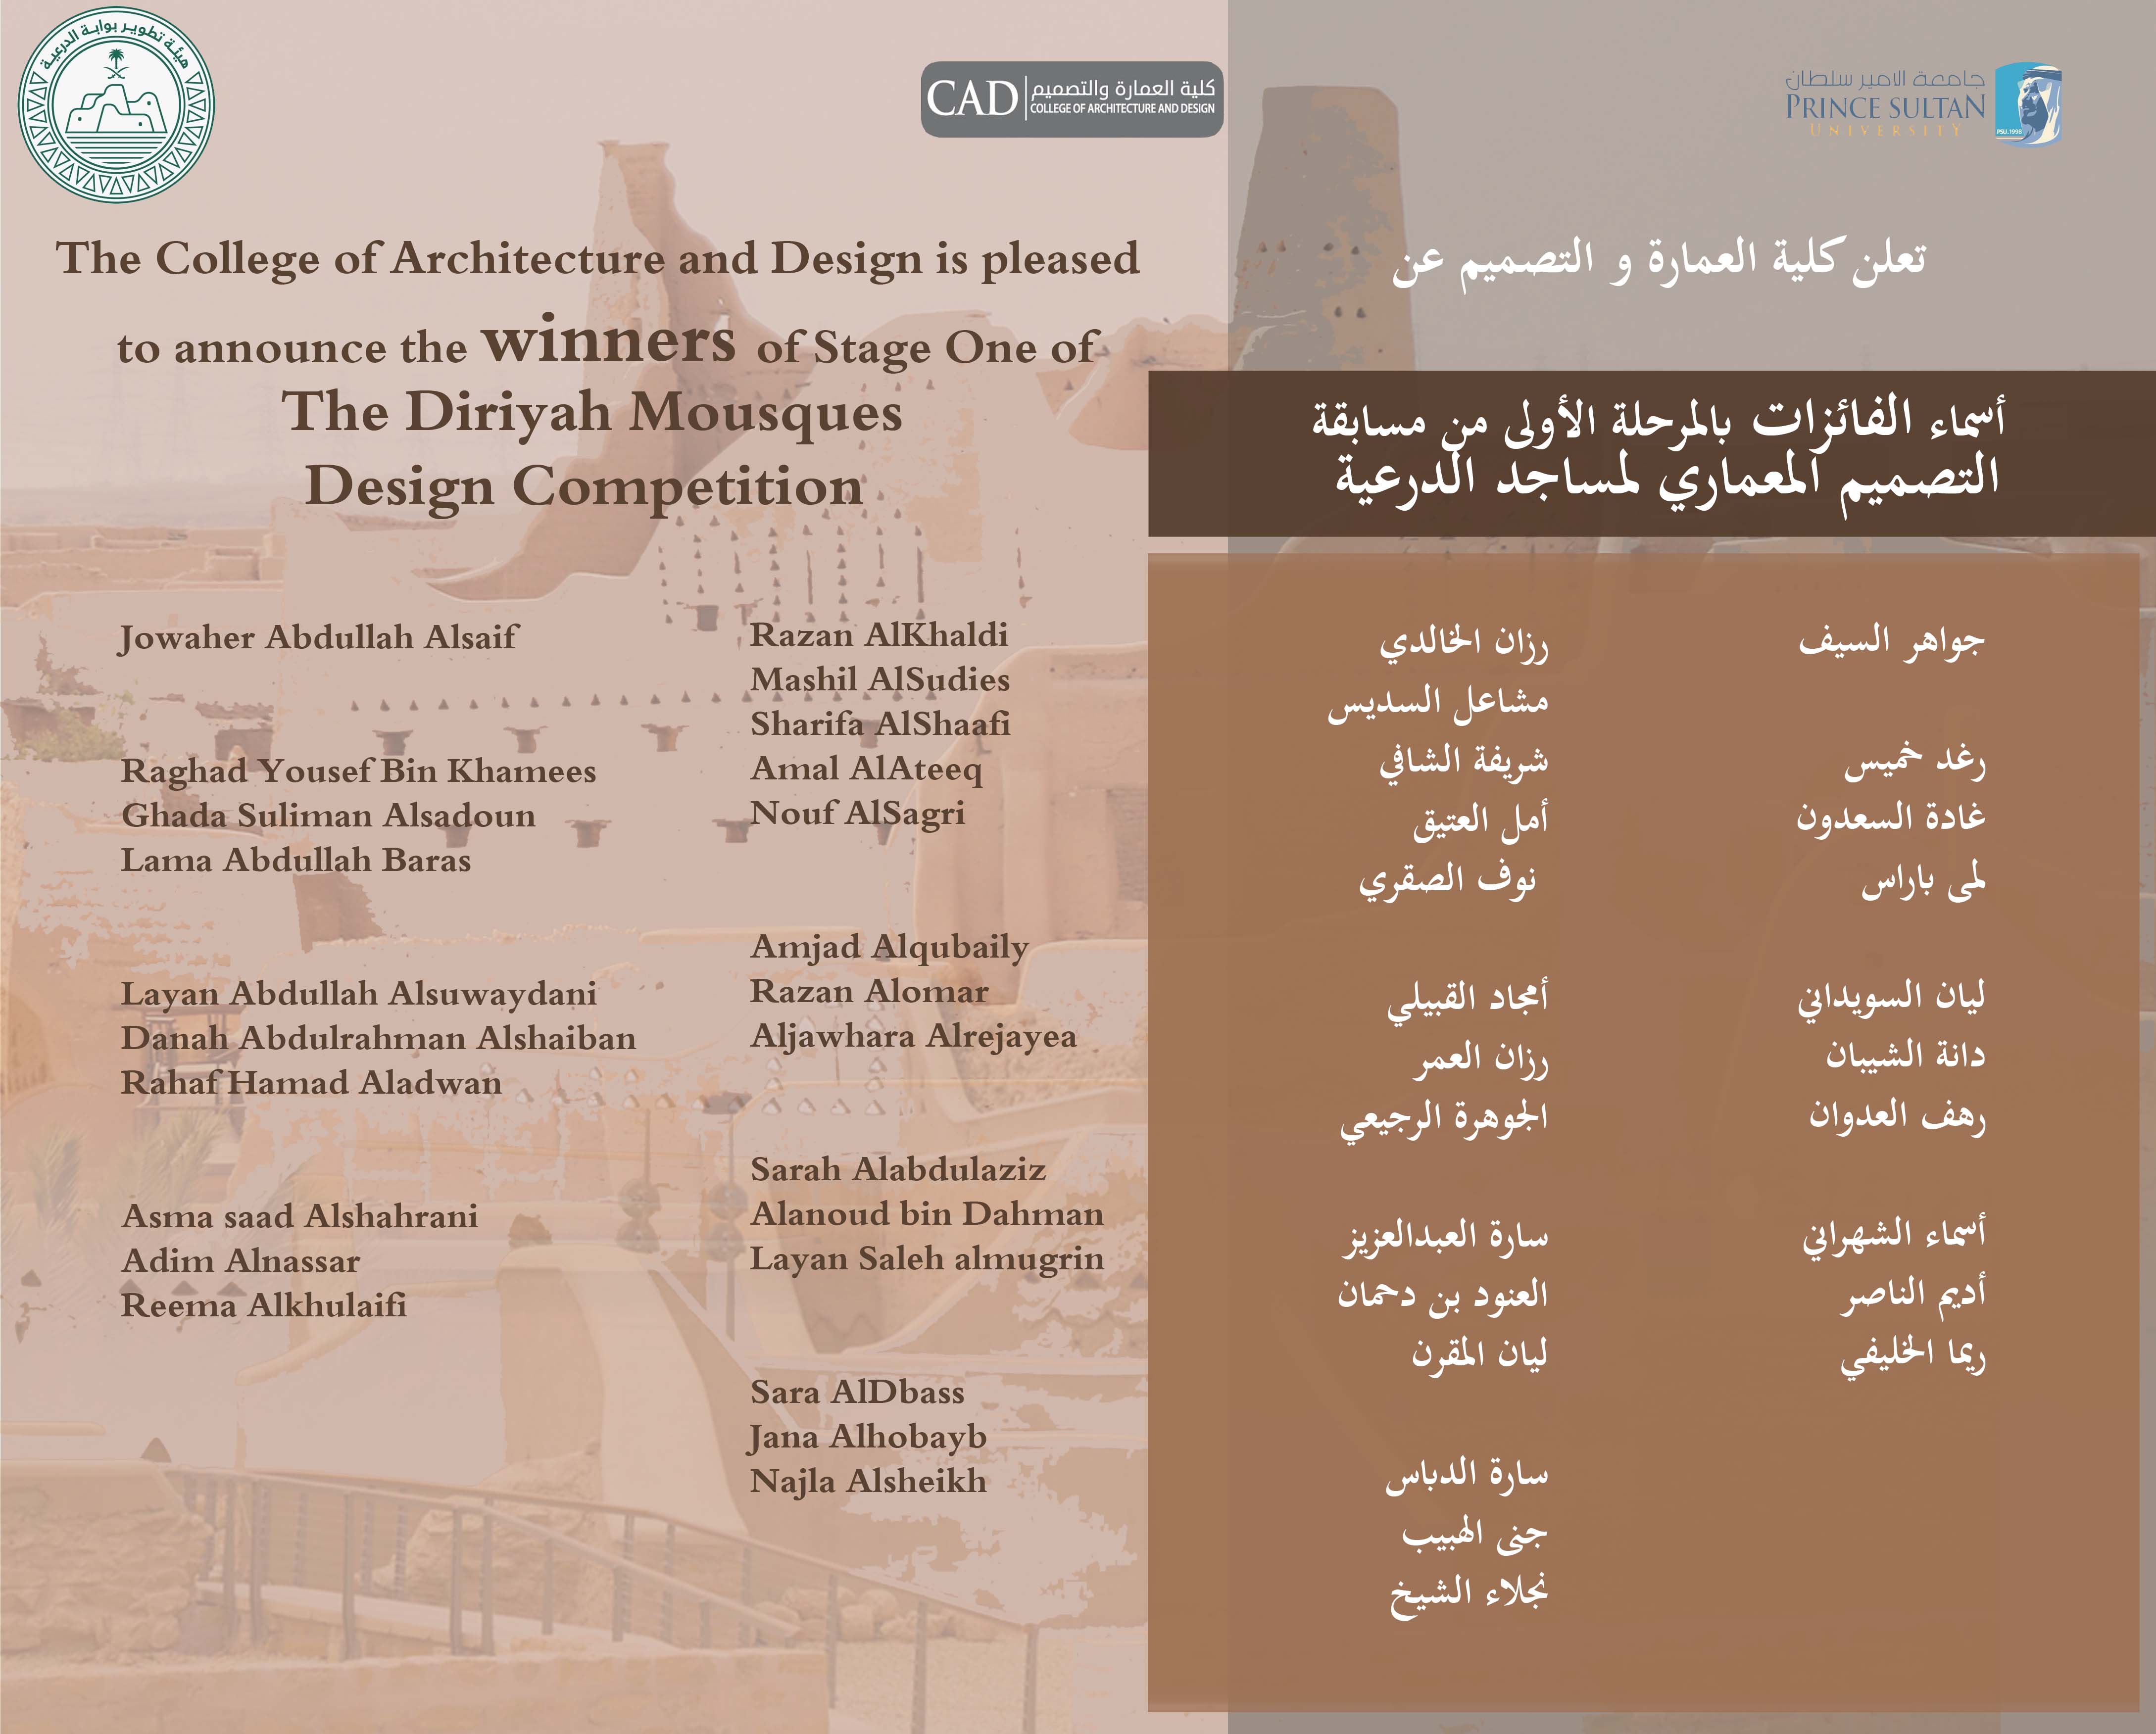 قائمة طالبات قسم العمارة المرشحات للمرحلة الاخيرة من مسابقة تصميم مسجد الدرعية